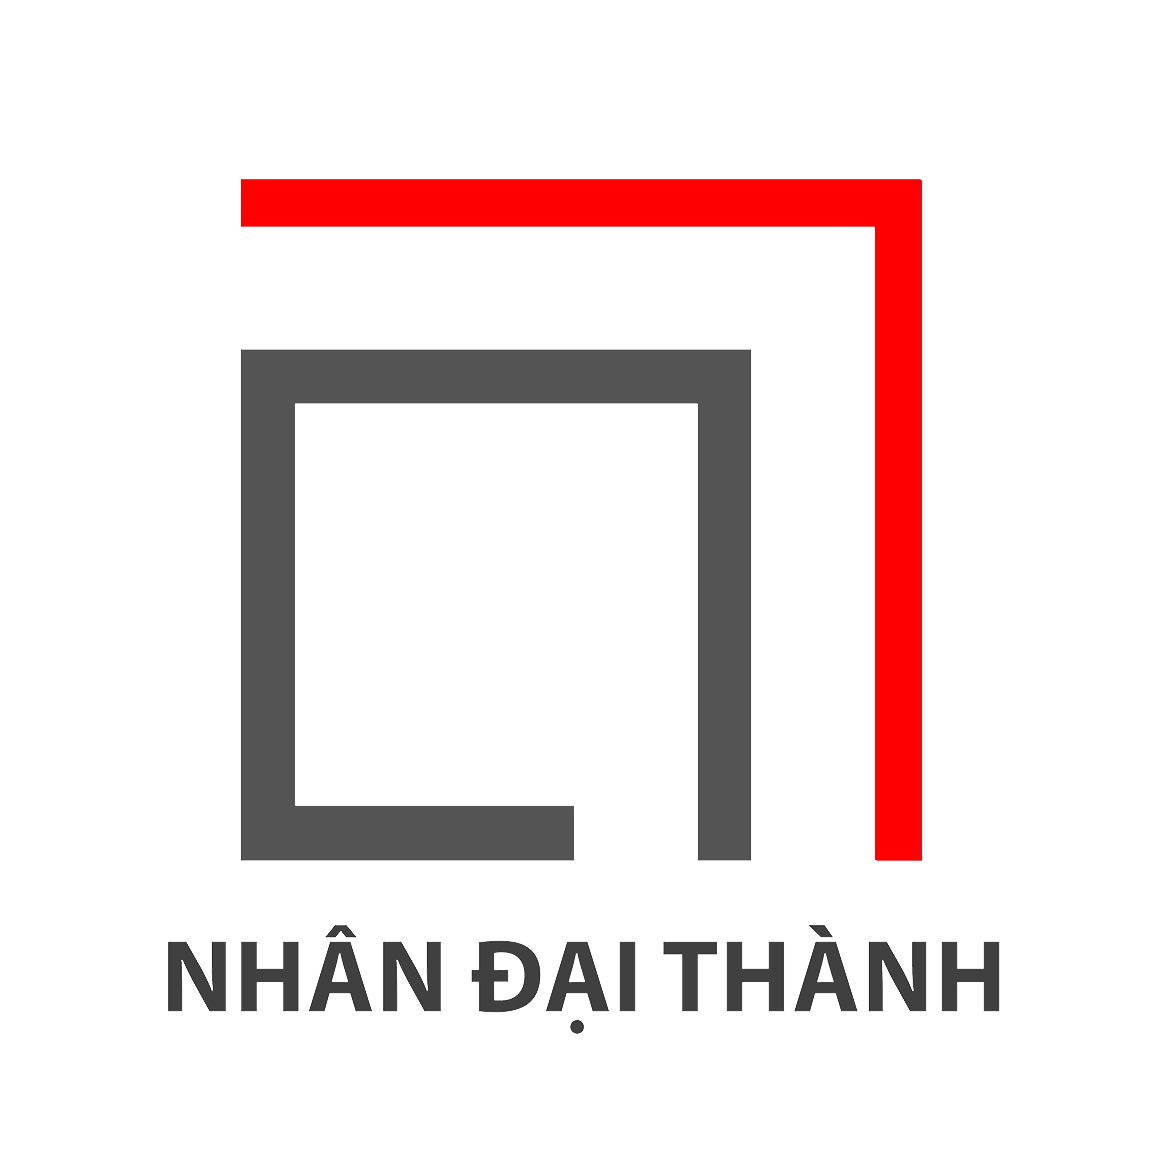 logo_nhan_dai_thanh8.png